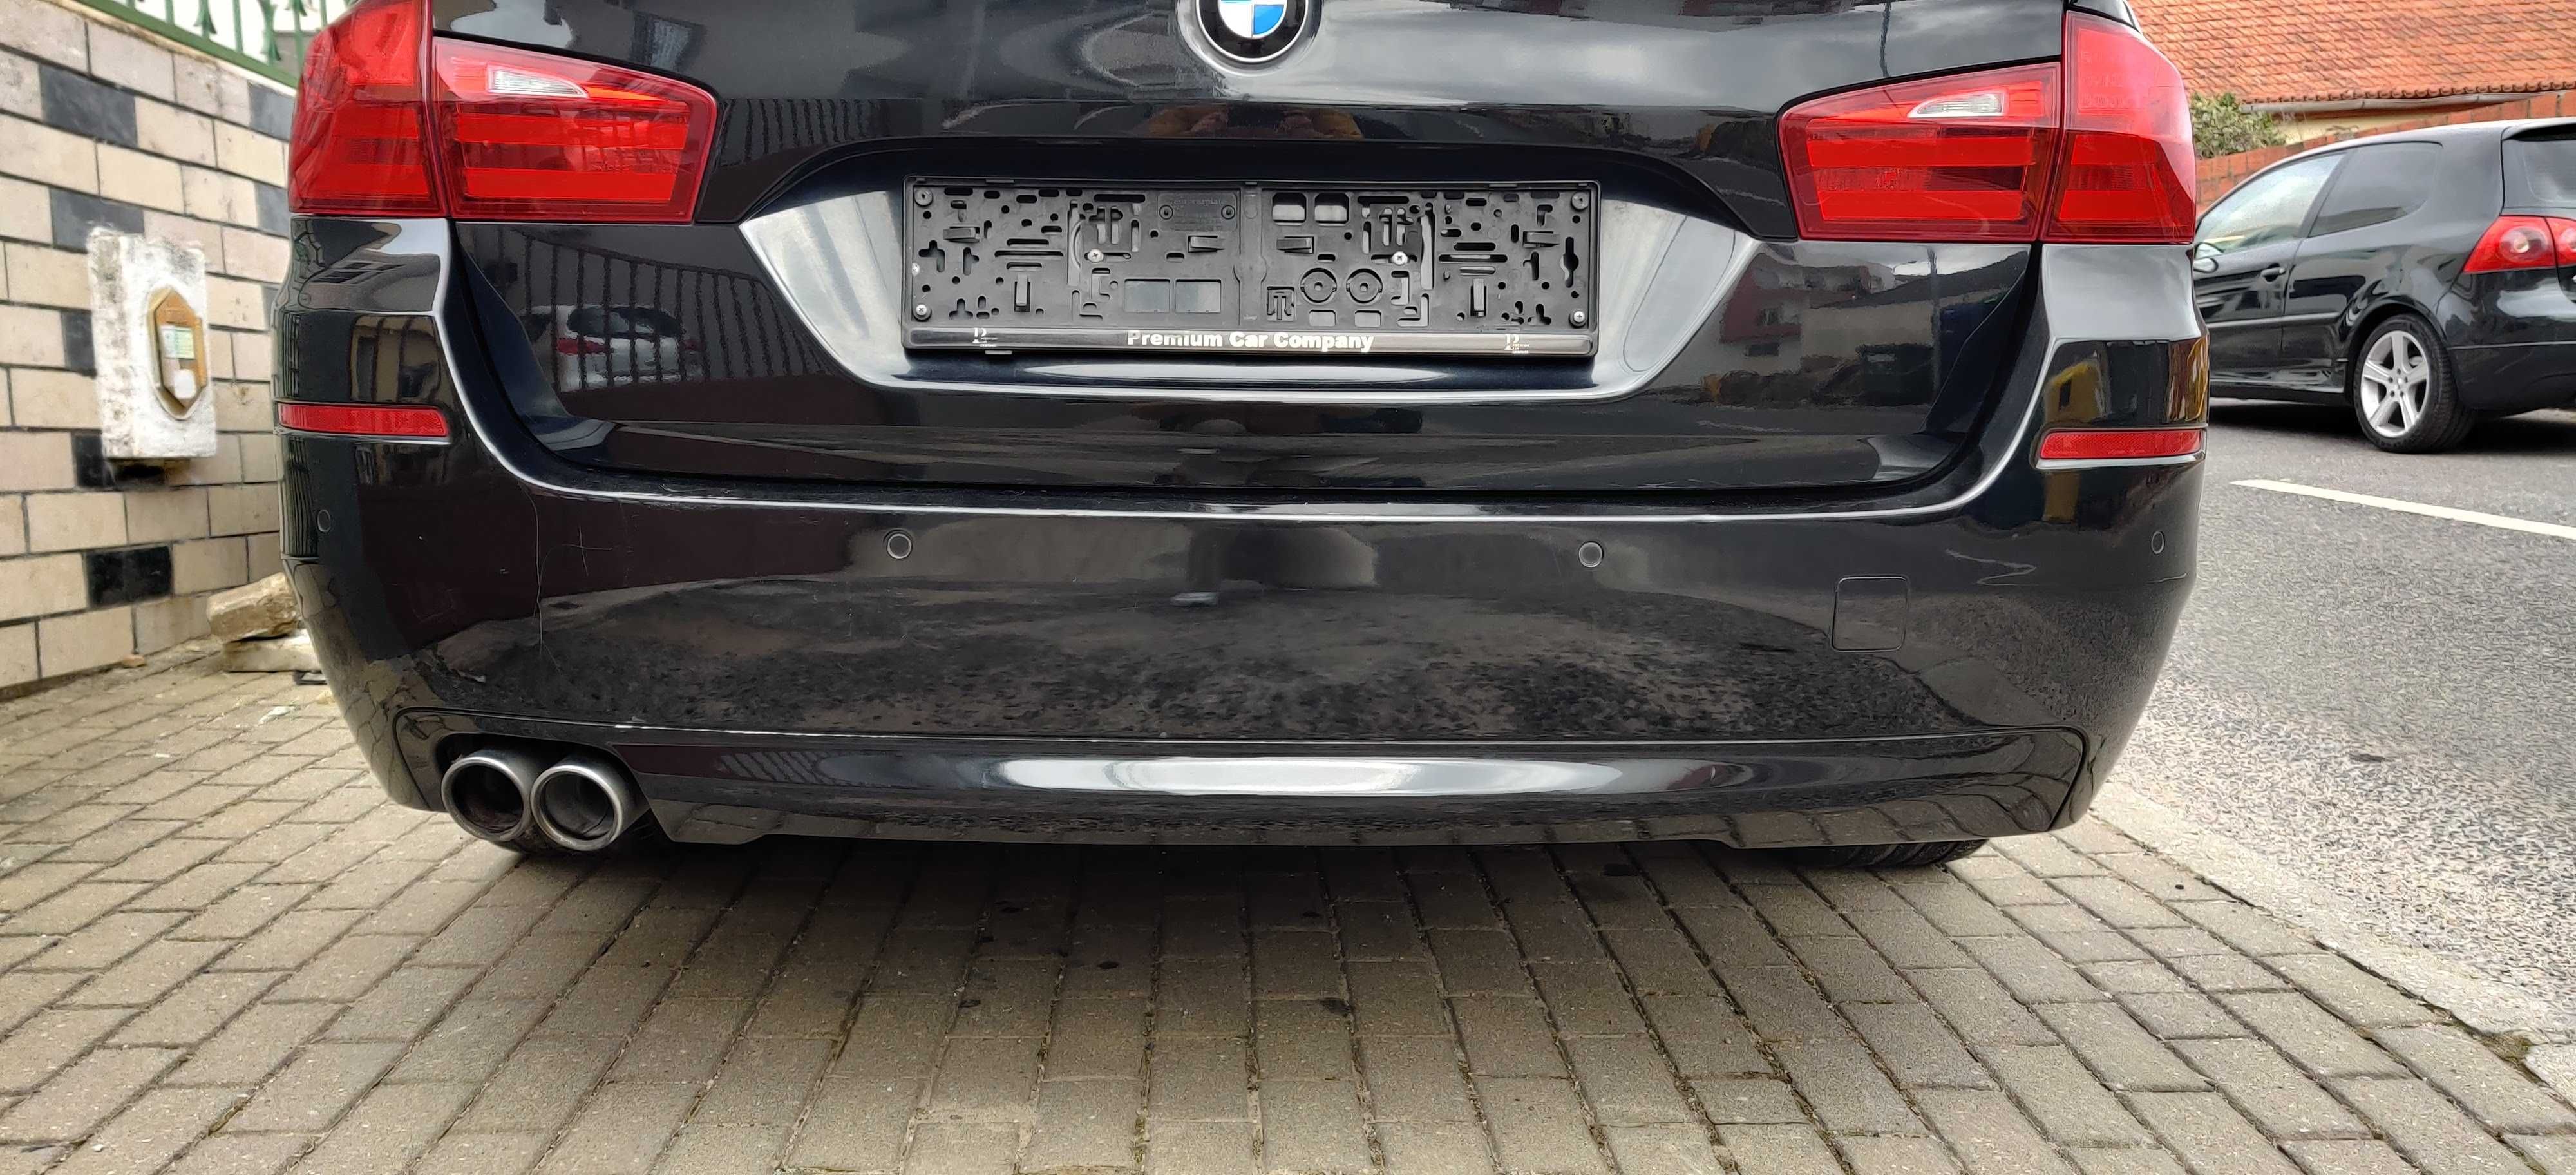 Para Choques Traseiro BMW 520d F11 - 2013 ORIGINAL